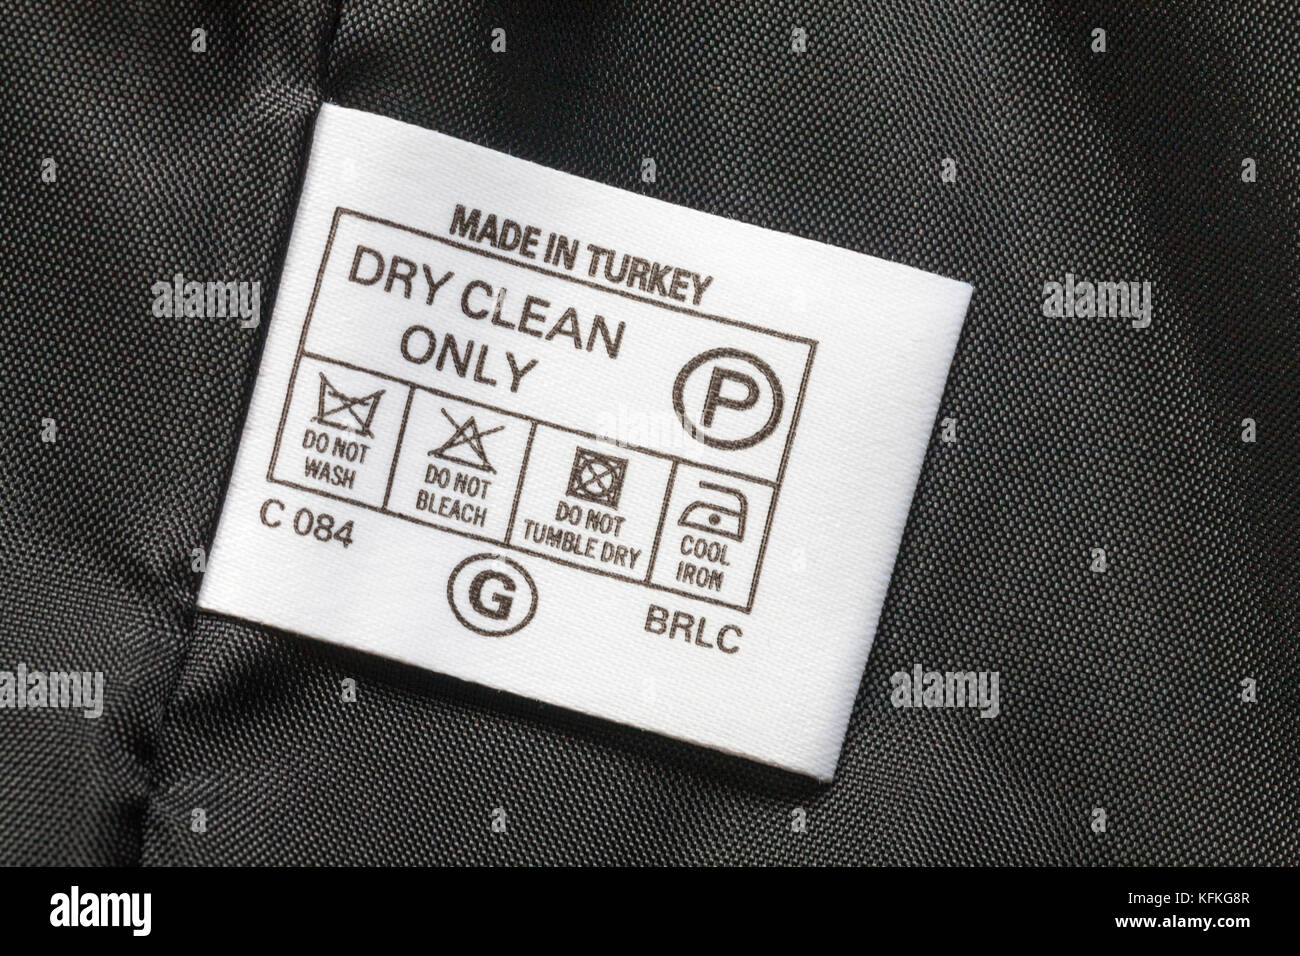 Symboles de lavage nettoyage à sec seulement étiquette dans la veste de femme faite en Turquie - vendues au Royaume-Uni Royaume-Uni, Grande Bretagne Banque D'Images